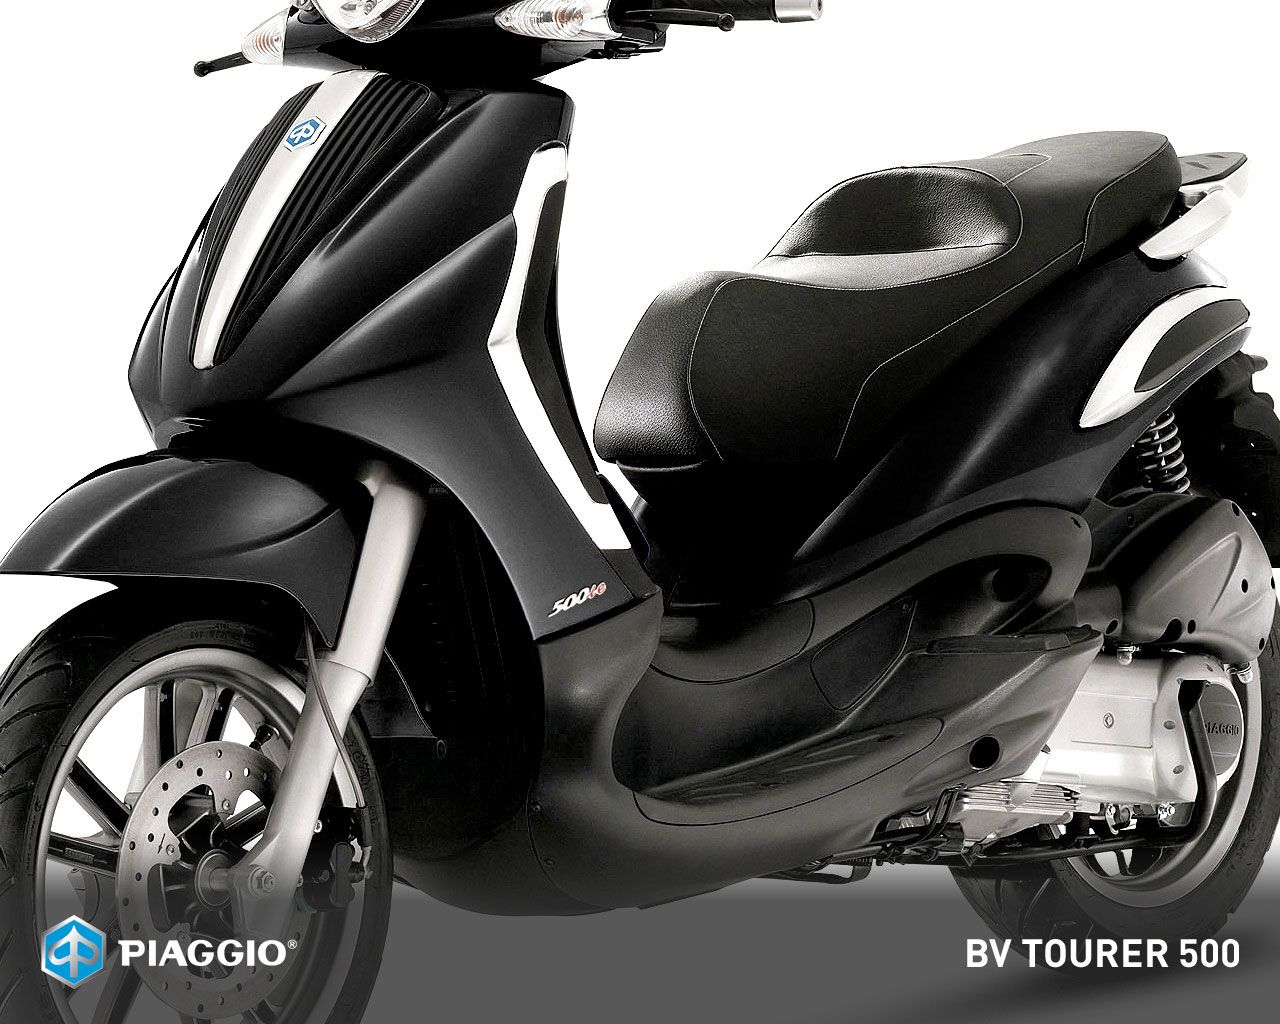 2012 Piaggio BV Tourer 500 